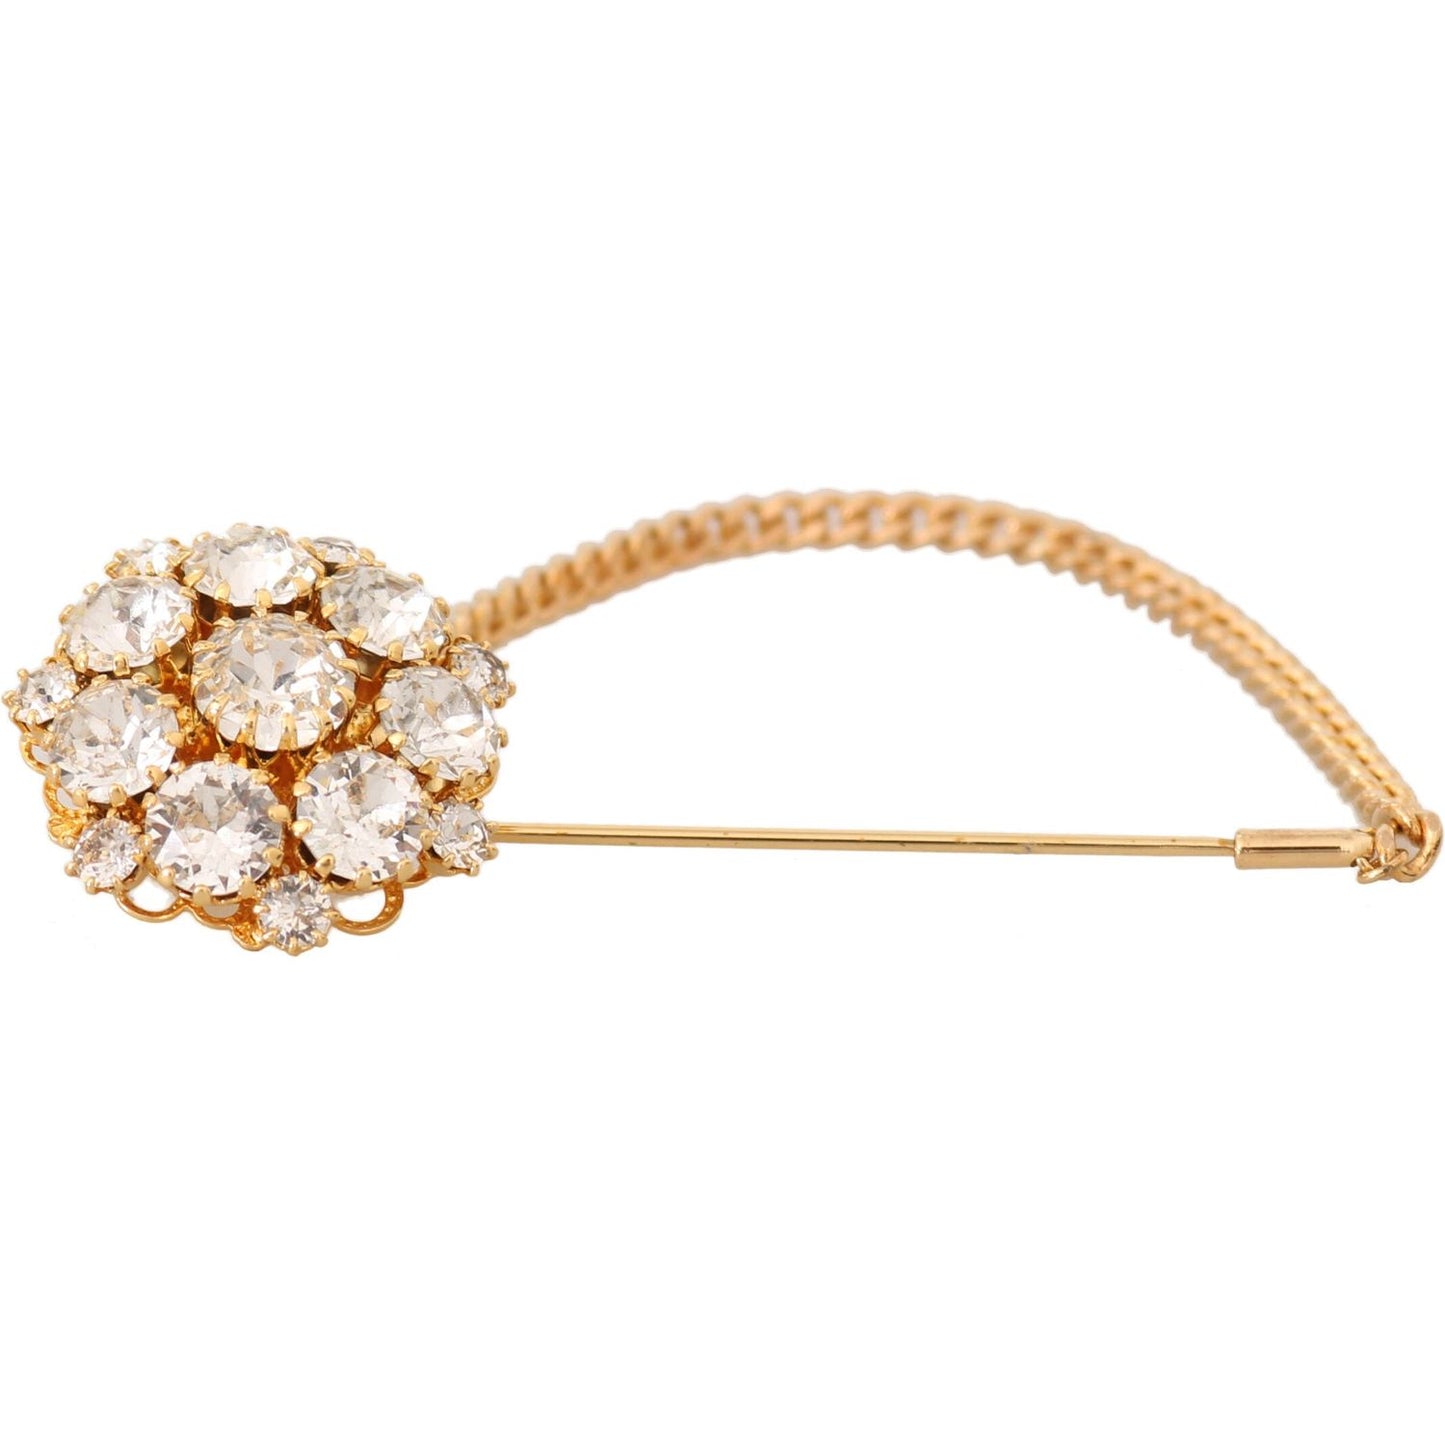 Exquisite Crystal-Embellished Gold Brooch